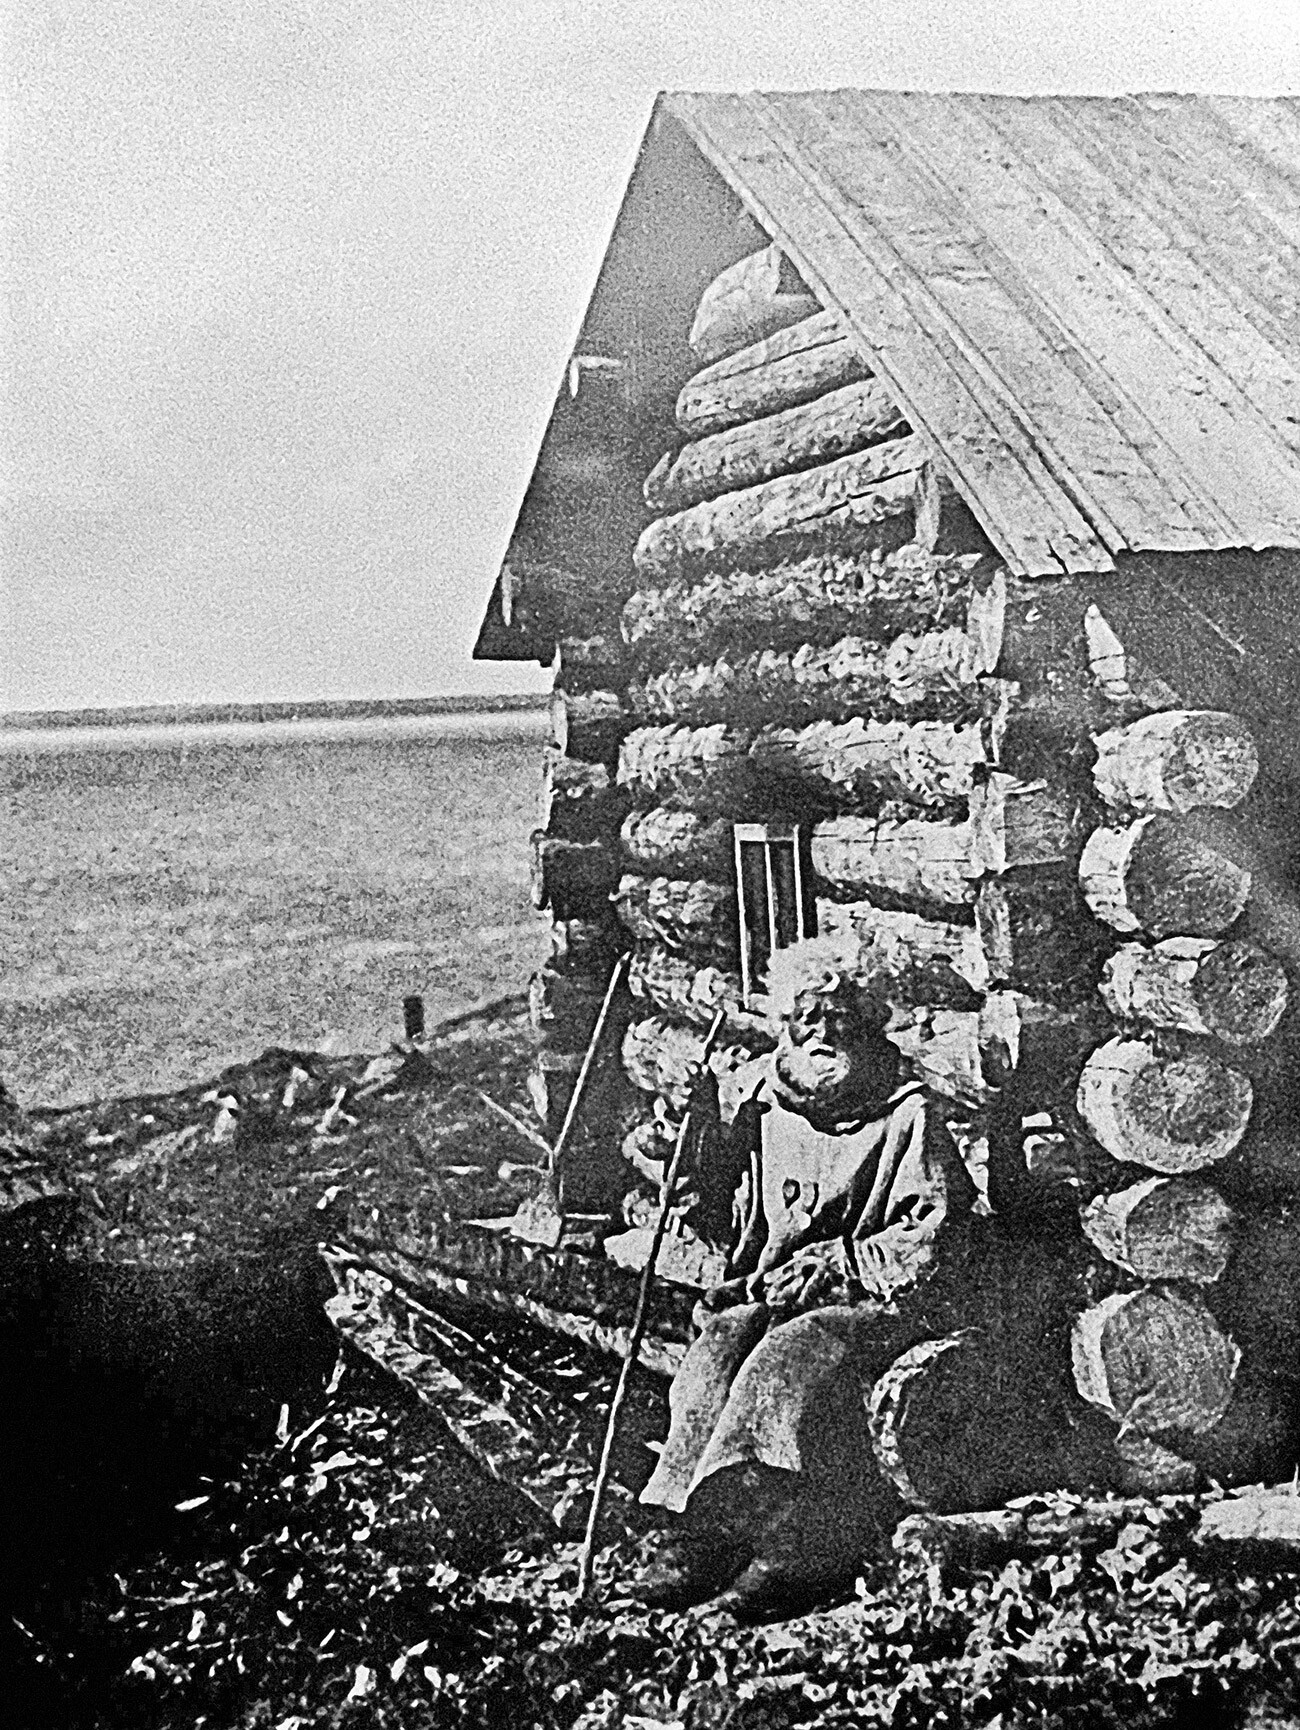 Einer der ersten Bewohner von Murmansk - der Fischer Semyon Korschew in seiner Hütte. 1910 г. Jahrhunderts gab es in der Region Murmansk insgesamt 12 Siedlungen mit einer ständigen Bevölkerung von 154 Menschen.